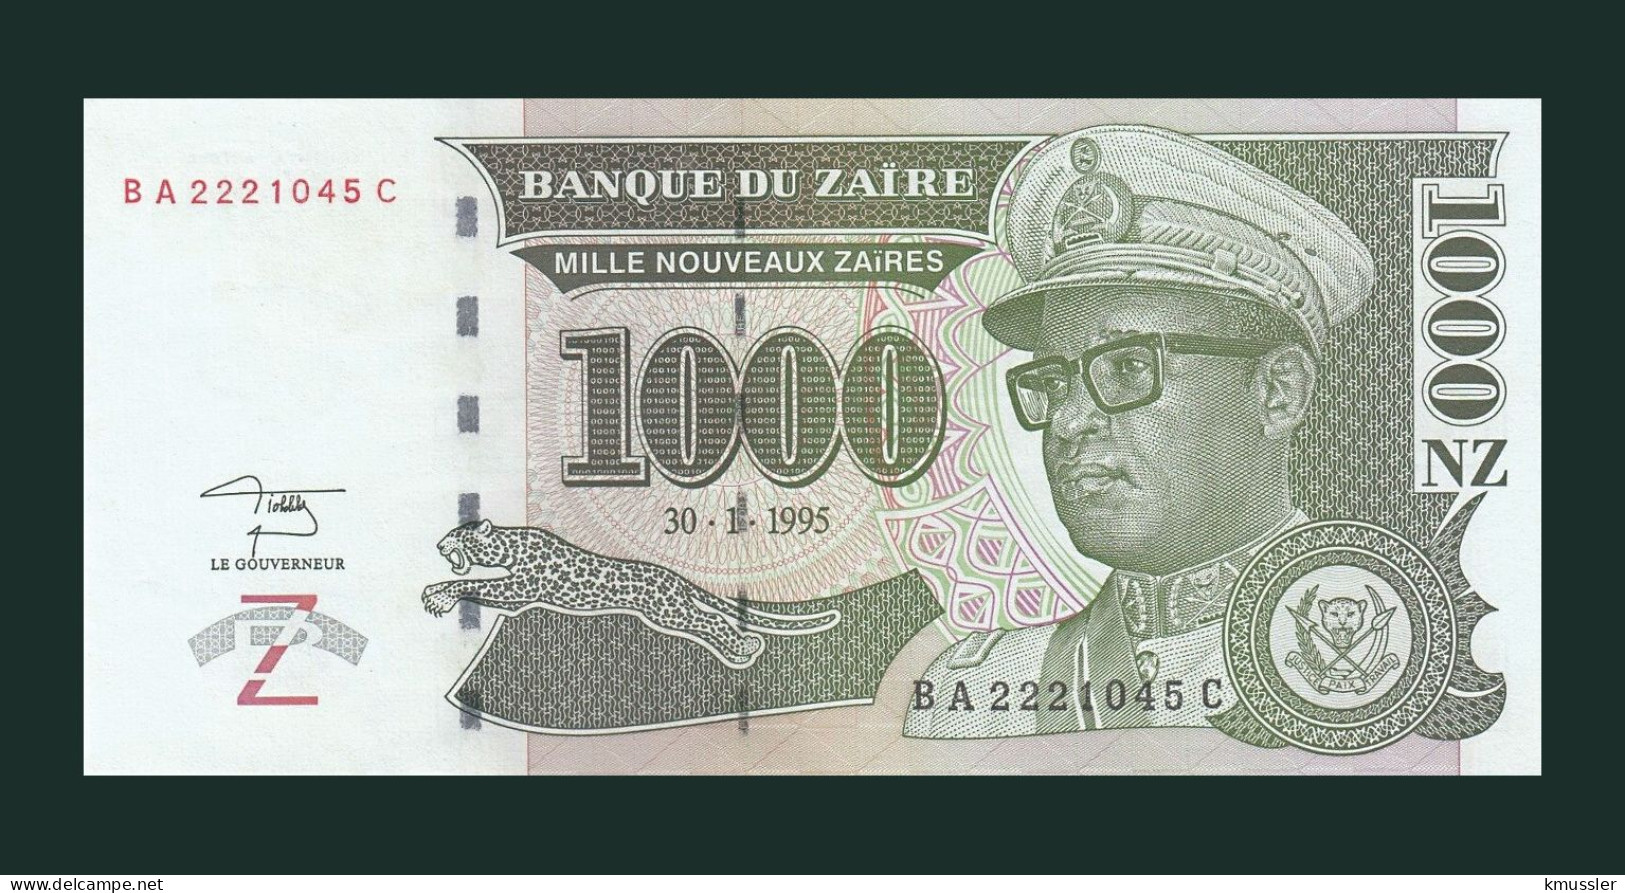 # # # Banknote Zaire 1.000 Nouveaux Zaires 1995 (P-67) HDMZ UNC # # # - Zaïre